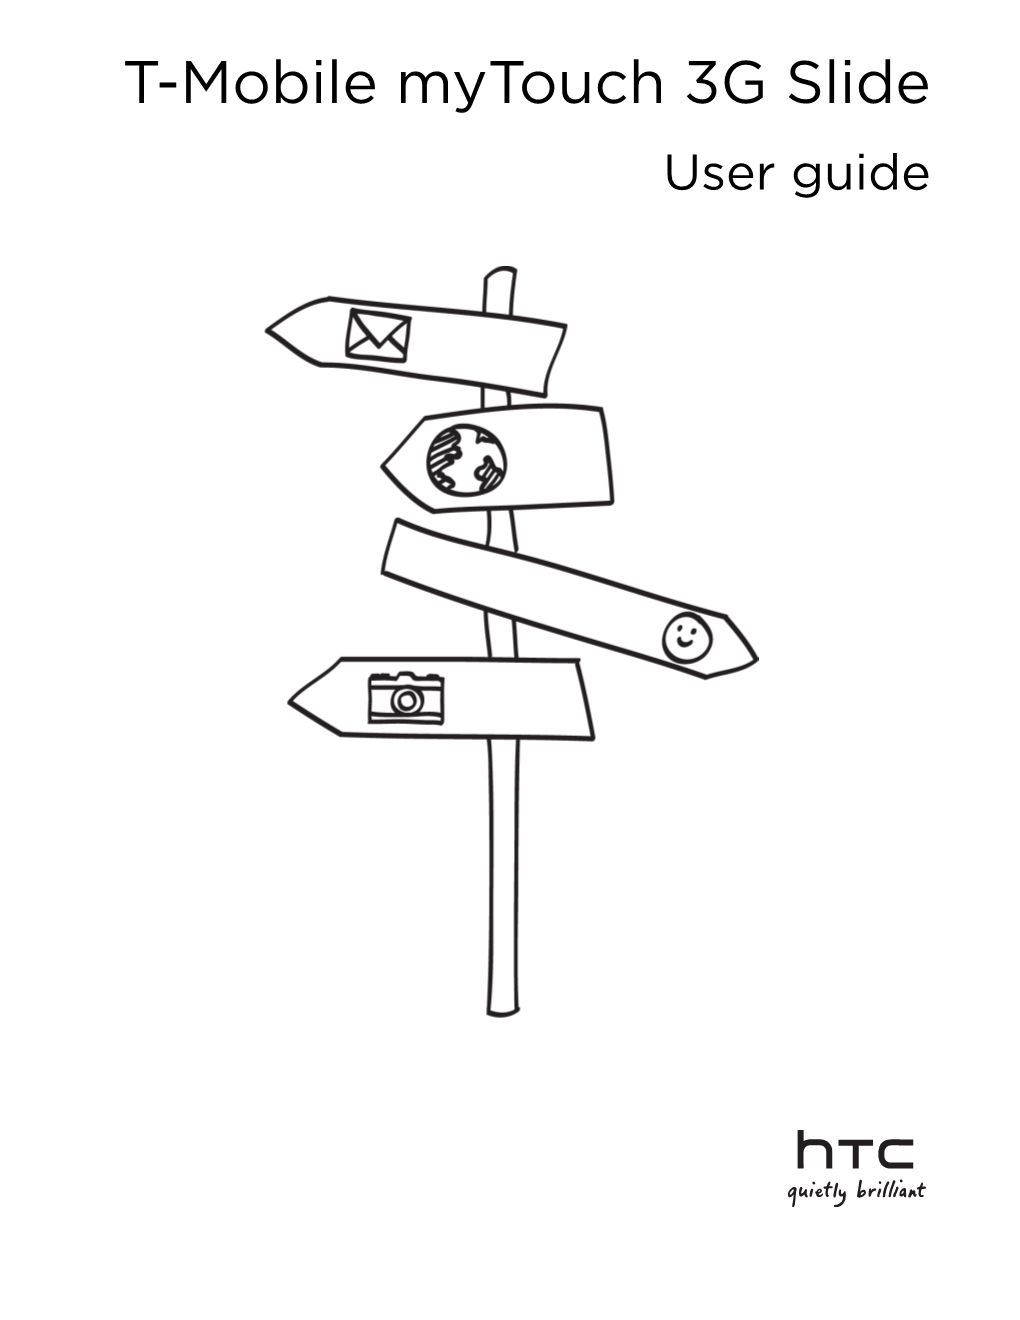 HTC Mytouch 3G Slide Manual